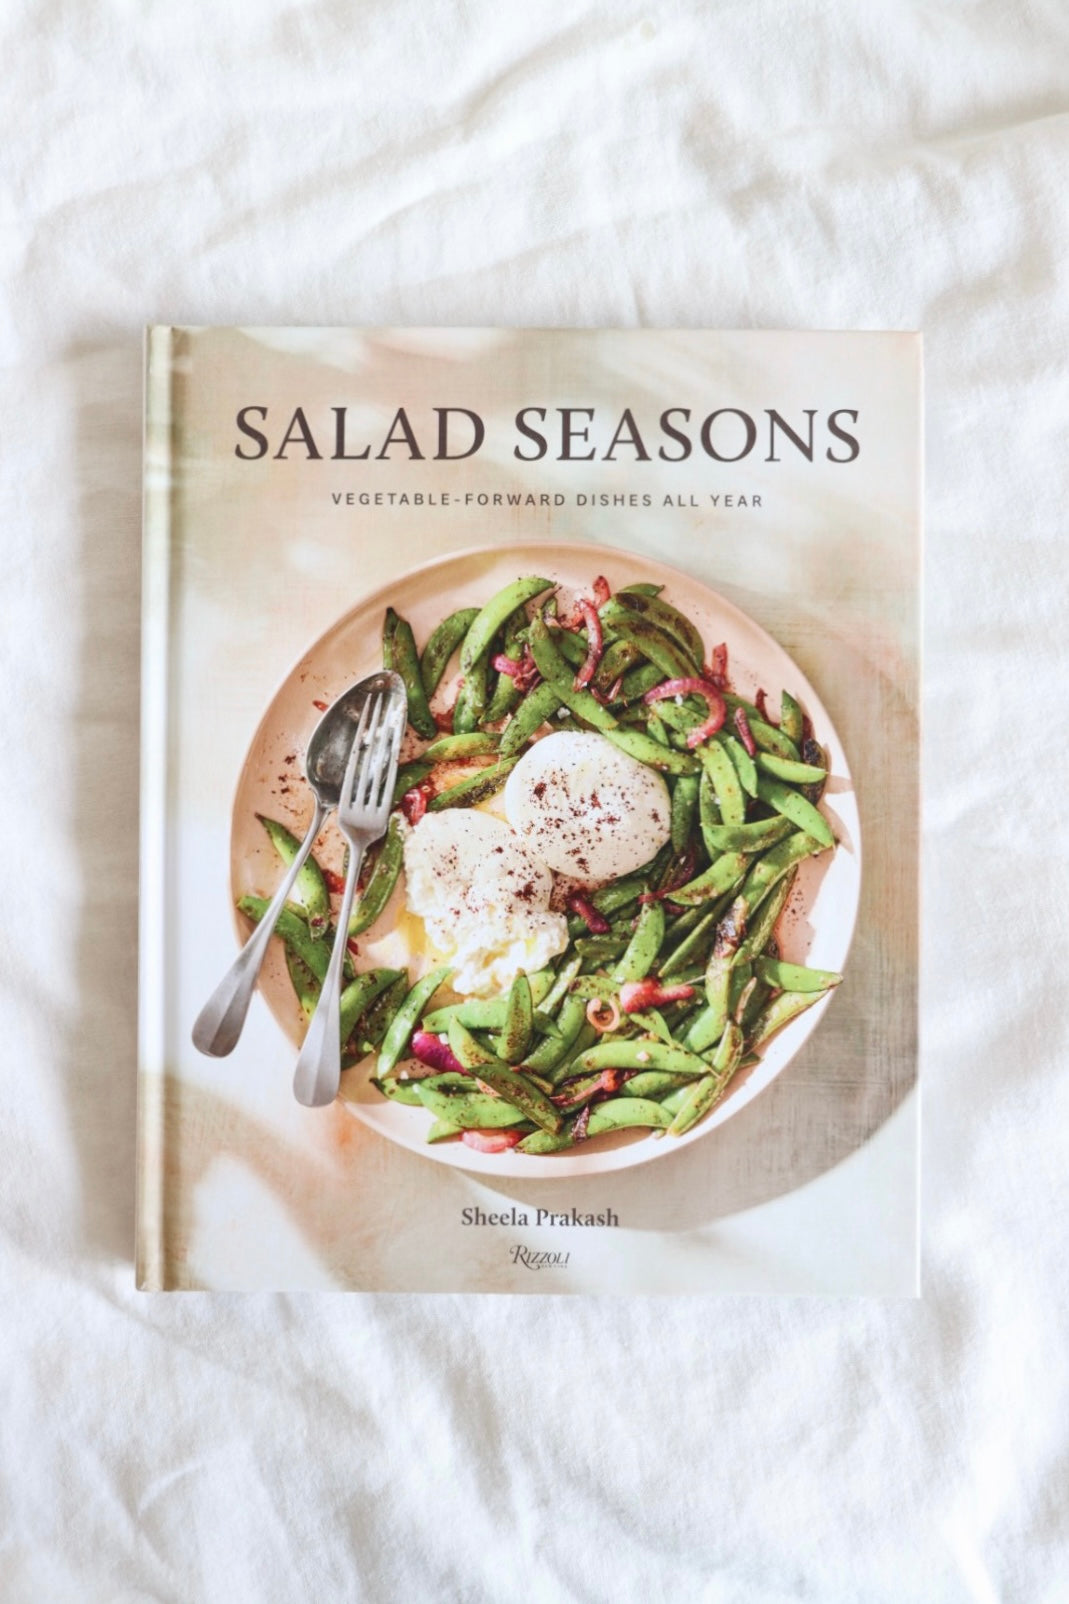 Salad Seasons